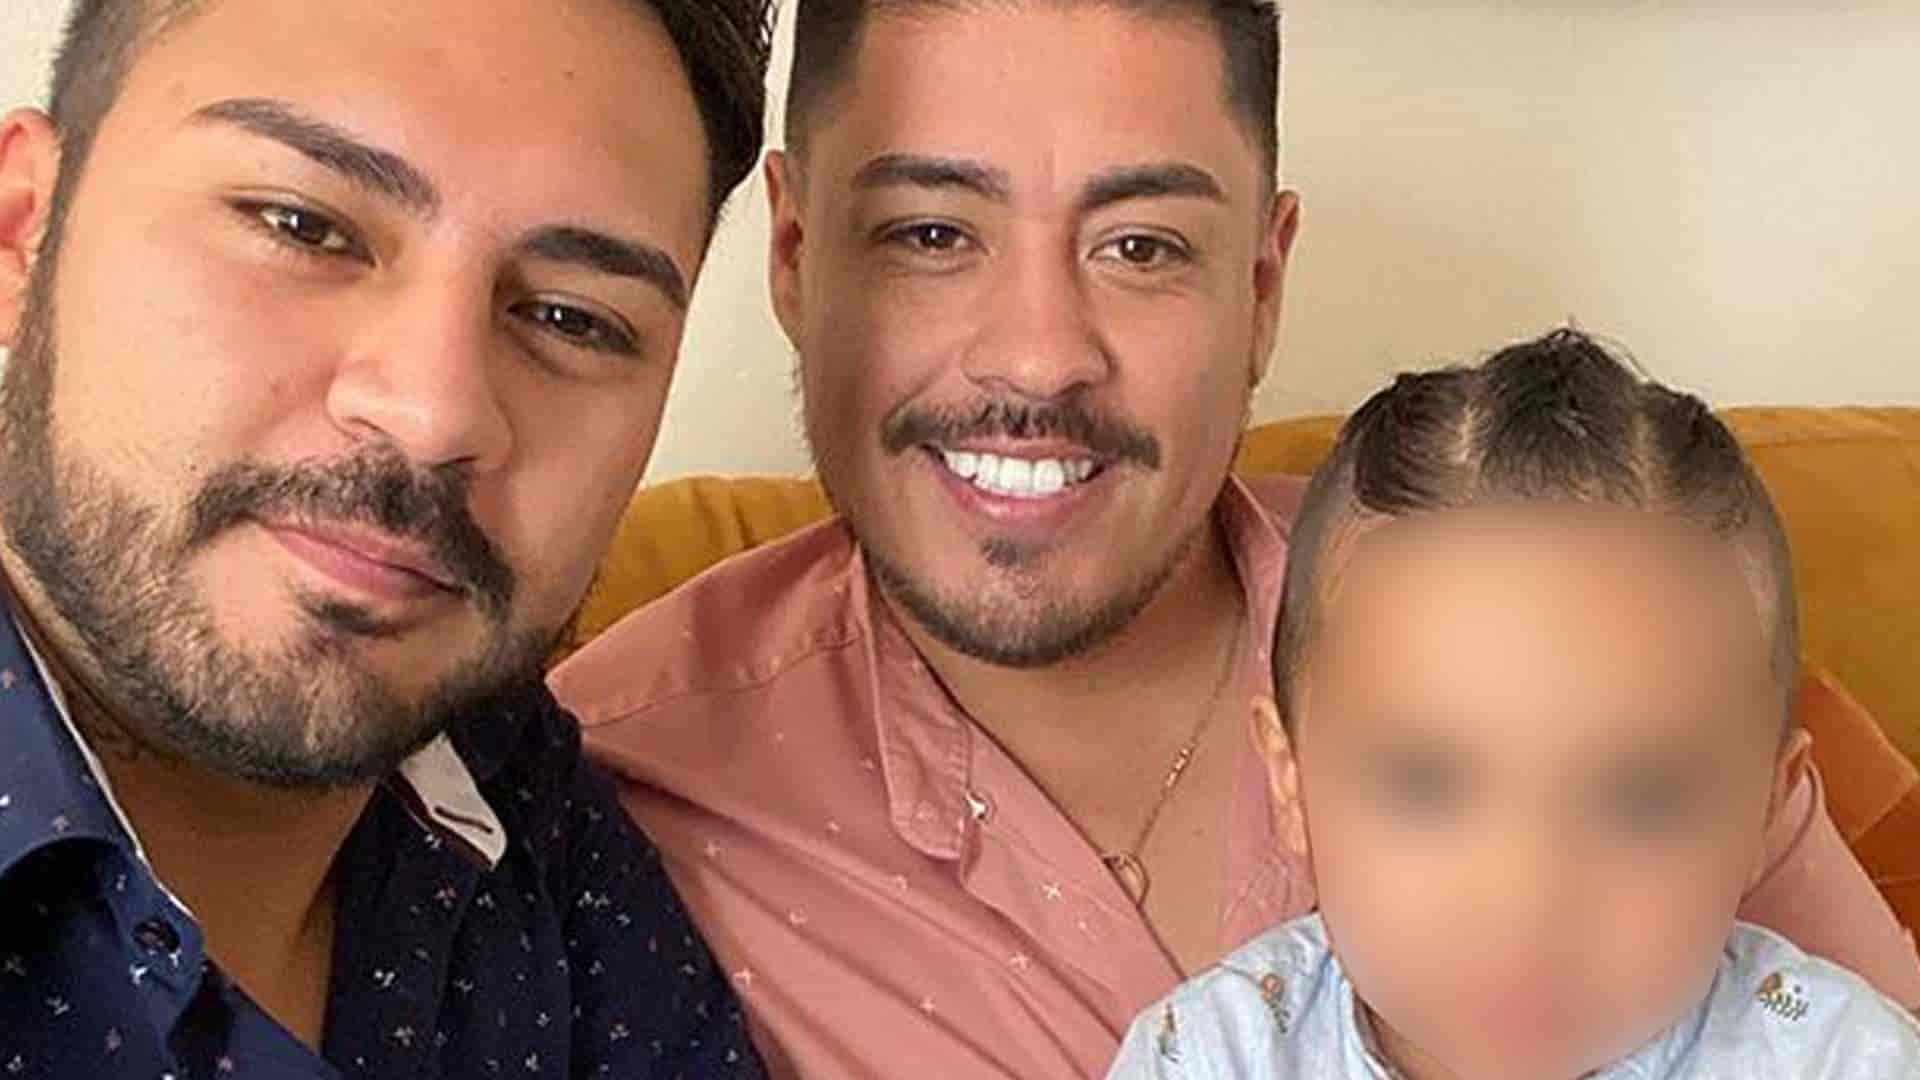 La misión casi imposible para que las parejas homoparentales adopten en México